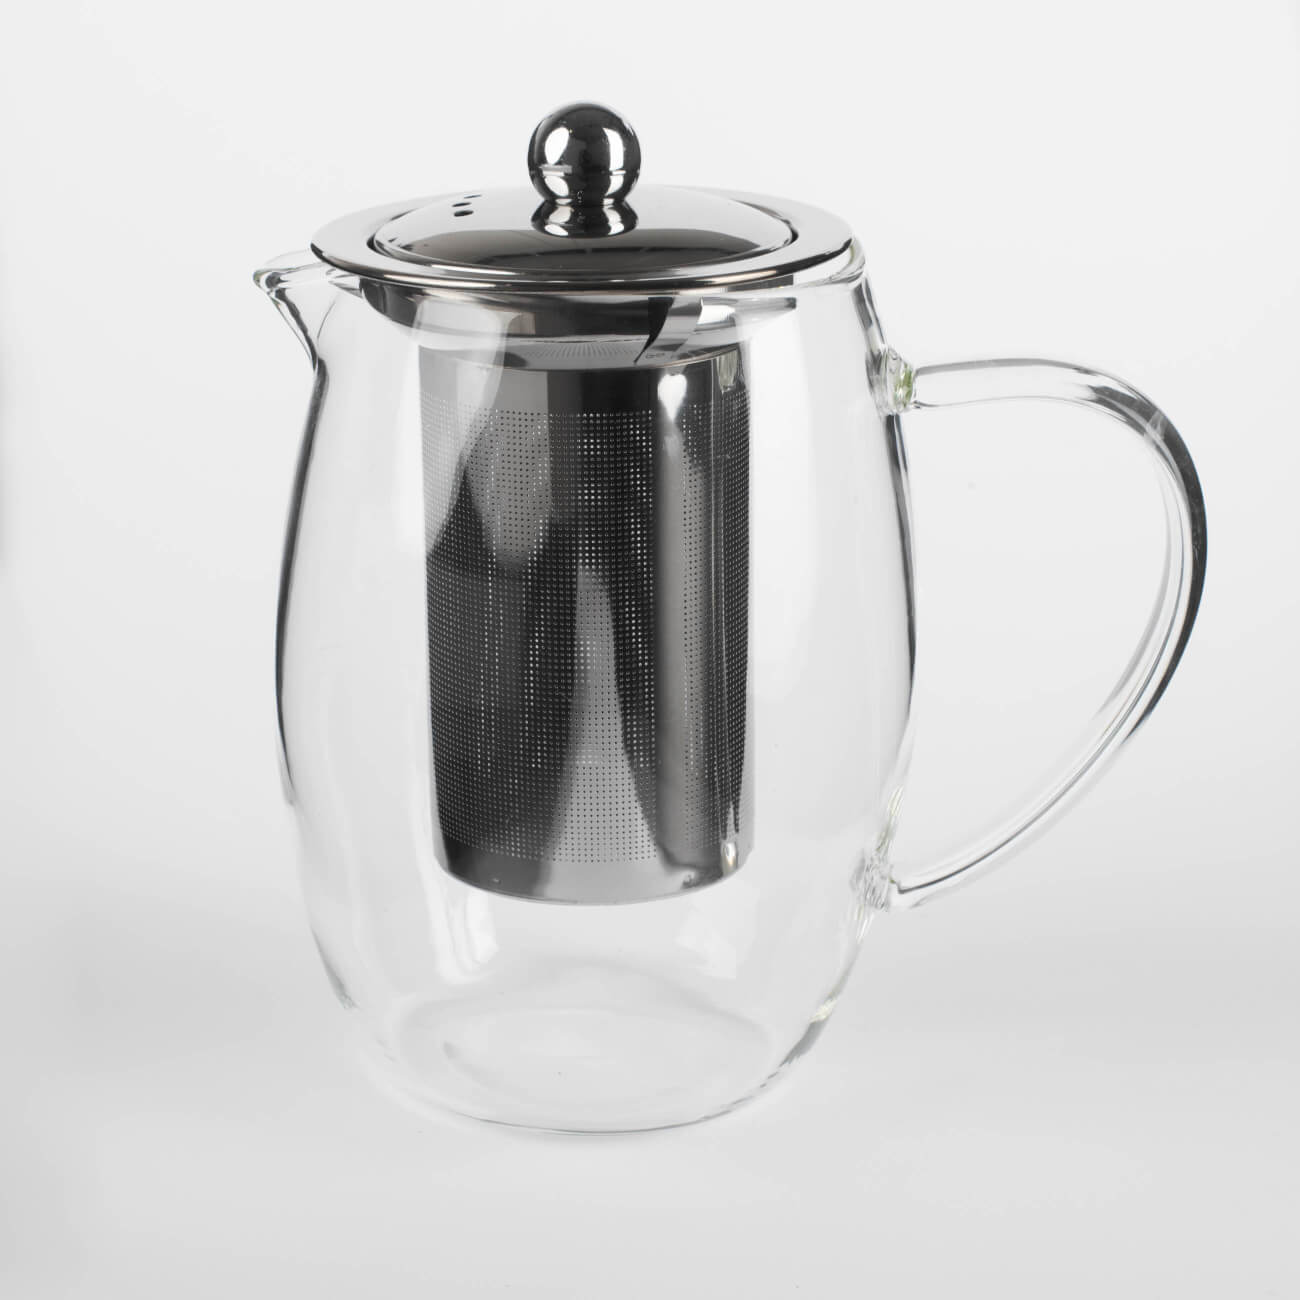 Teapot, 780 ml, used glass, Classic изображение № 1